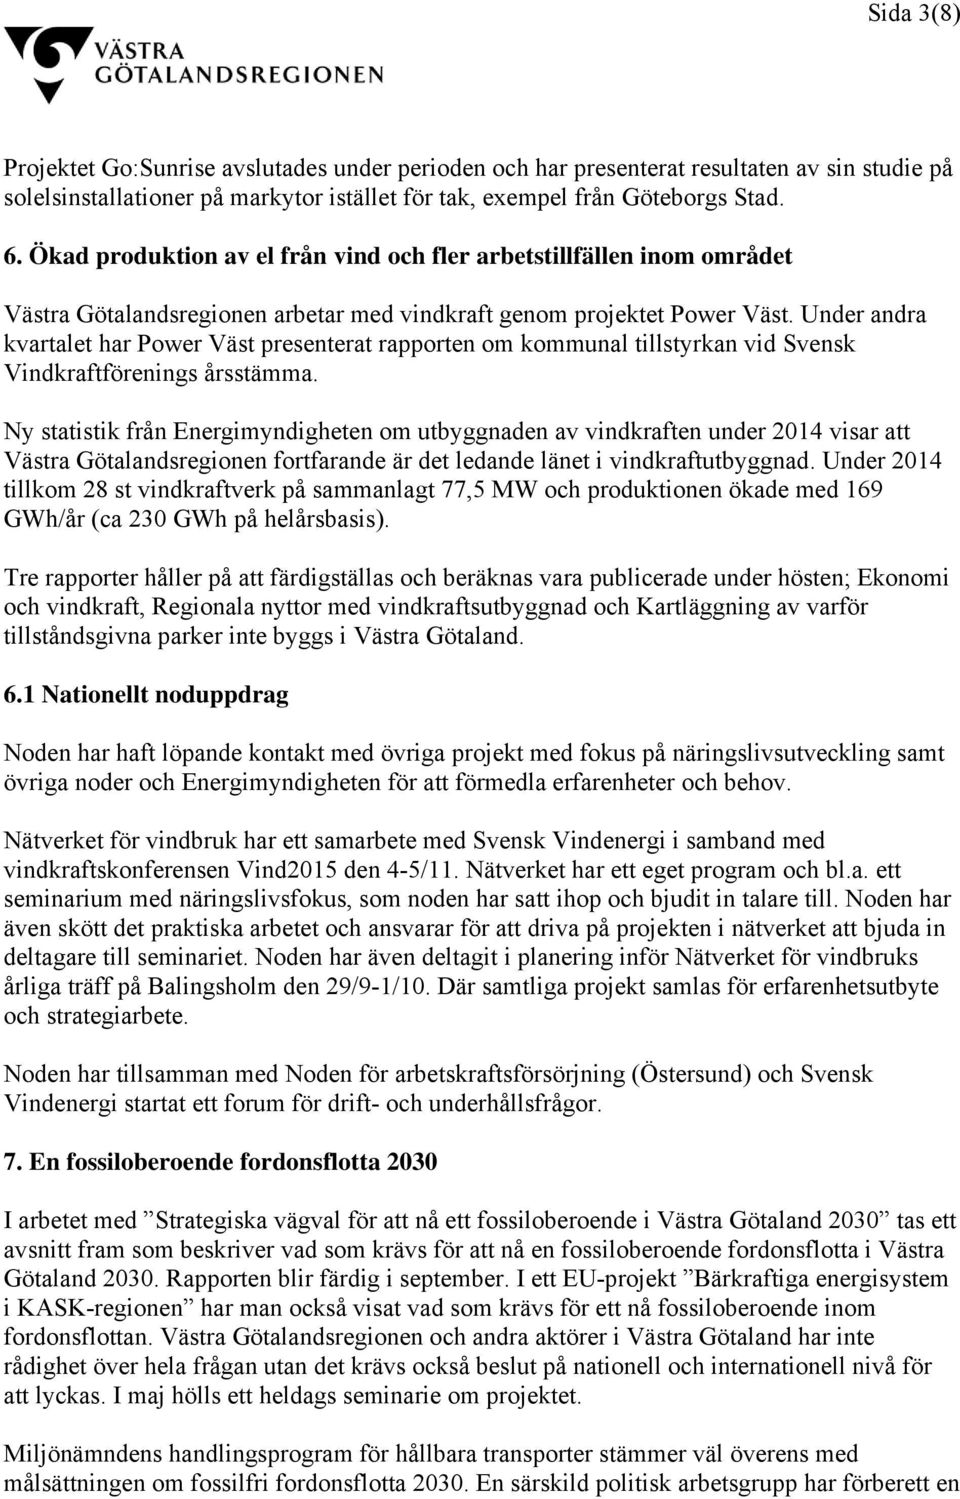 Under andra kvartalet har Power Väst presenterat rapporten om kommunal tillstyrkan vid Svensk Vindkraftförenings årsstämma.